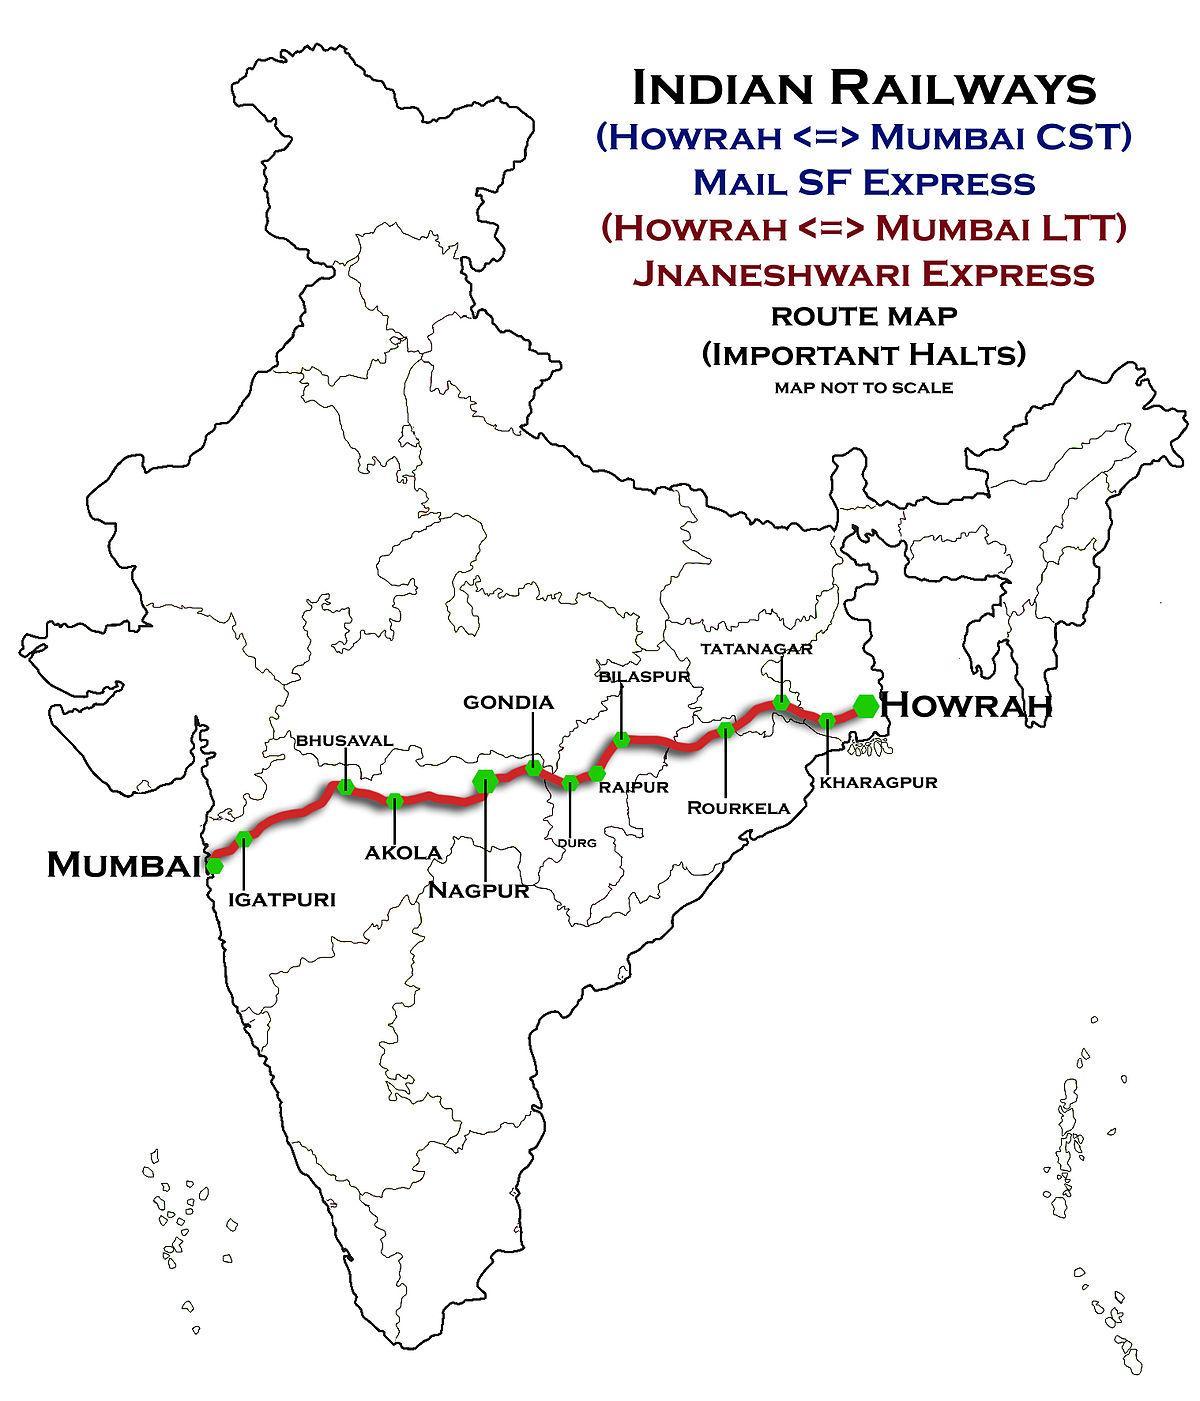 nagpur Mumbai express highway kort